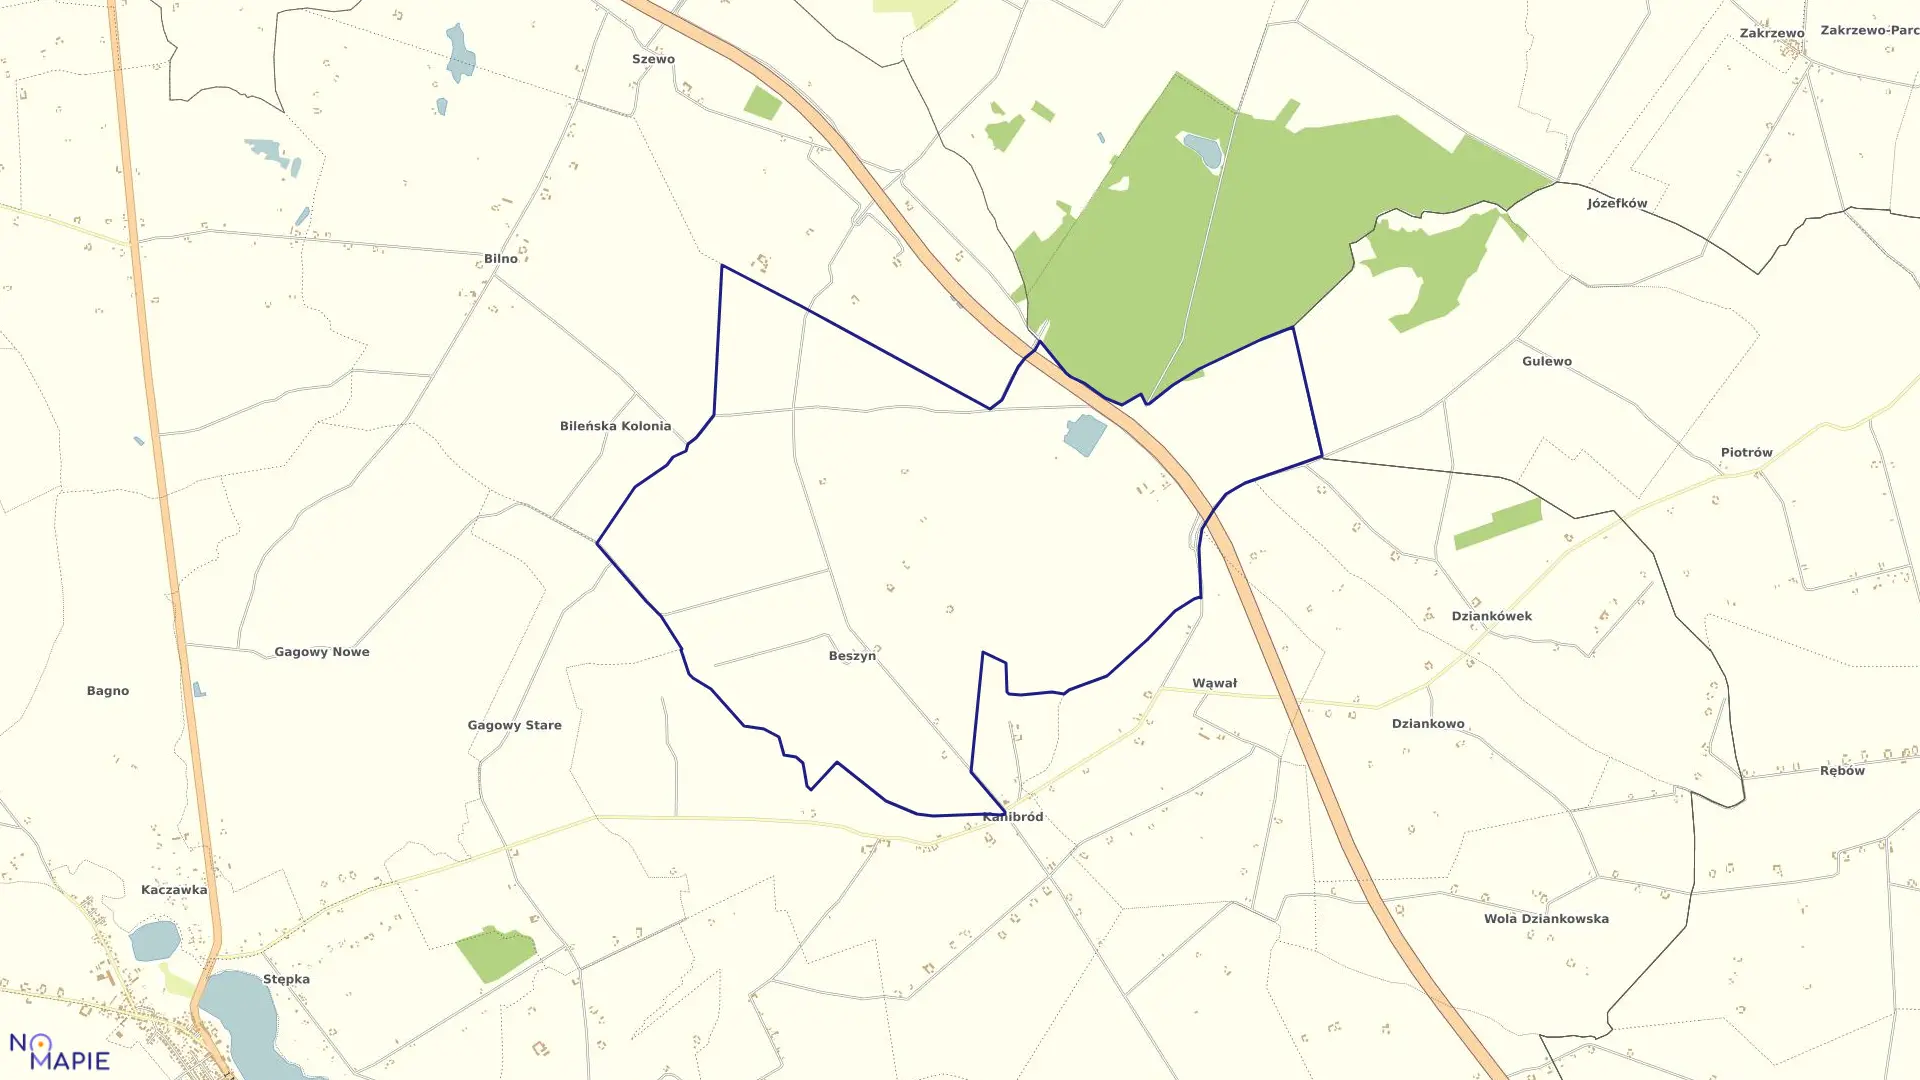 Mapa obrębu Beszyn w gminie Lubień Kujawski